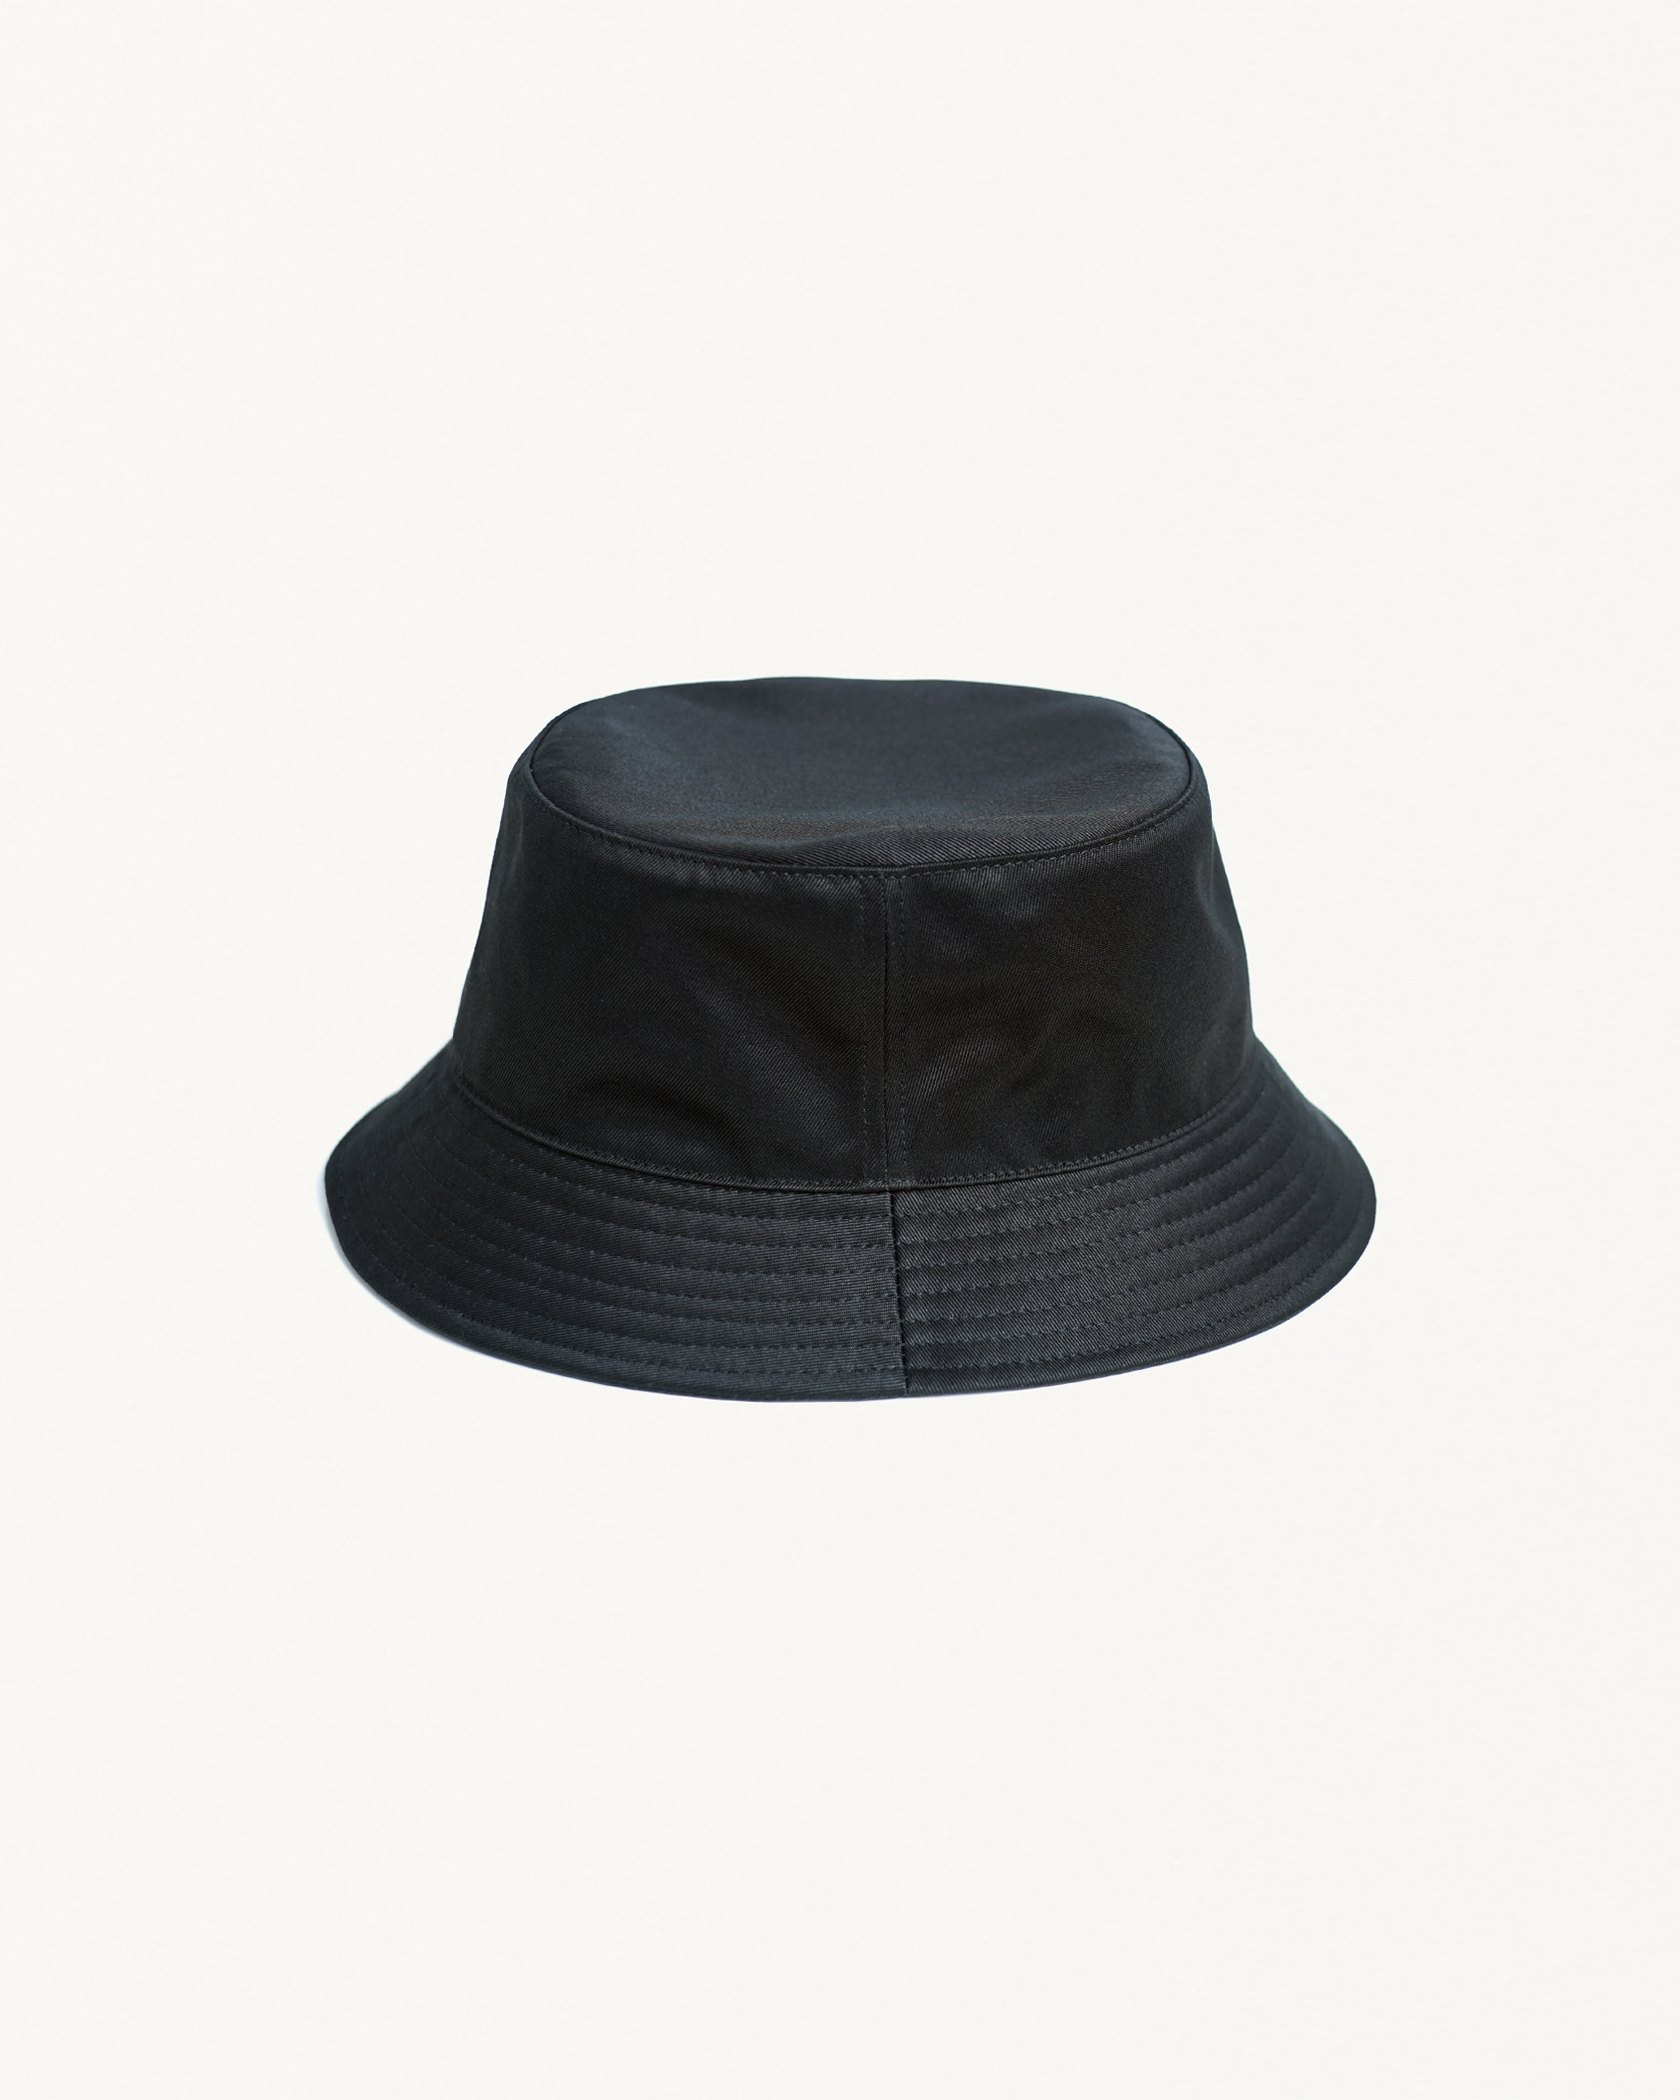 COTTON MOUNT HAT 2.0 詳細画像 Black x Silver 3